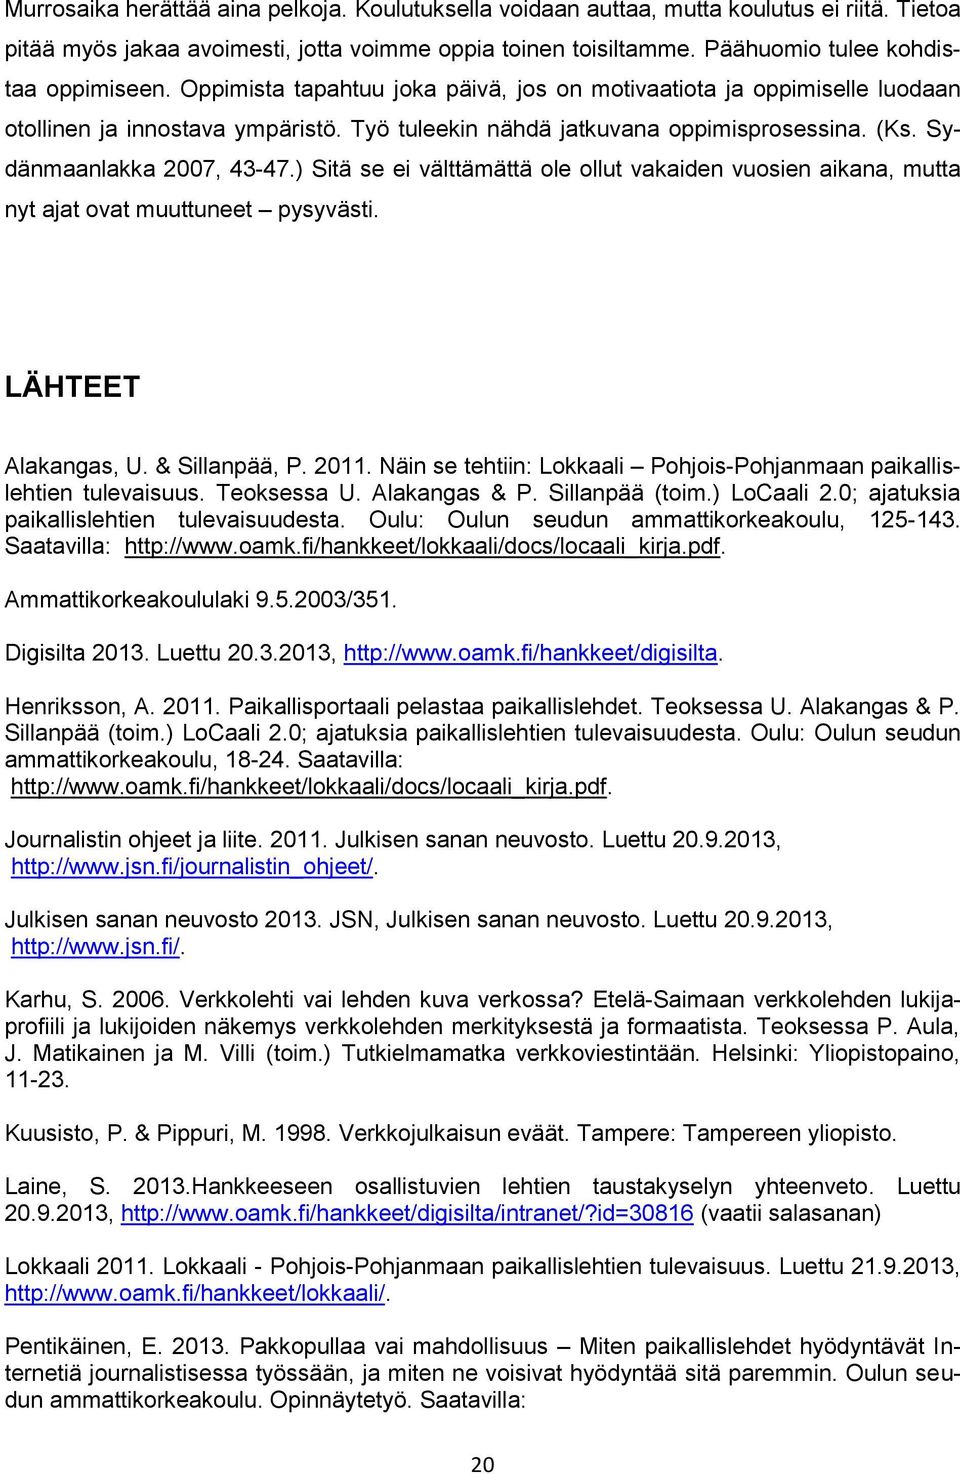 ) Sitä se ei välttämättä ole ollut vakaiden vuosien aikana, mutta nyt ajat ovat muuttuneet pysyvästi. LÄHTEET Alakangas, U. & Sillanpää, P. 2011.